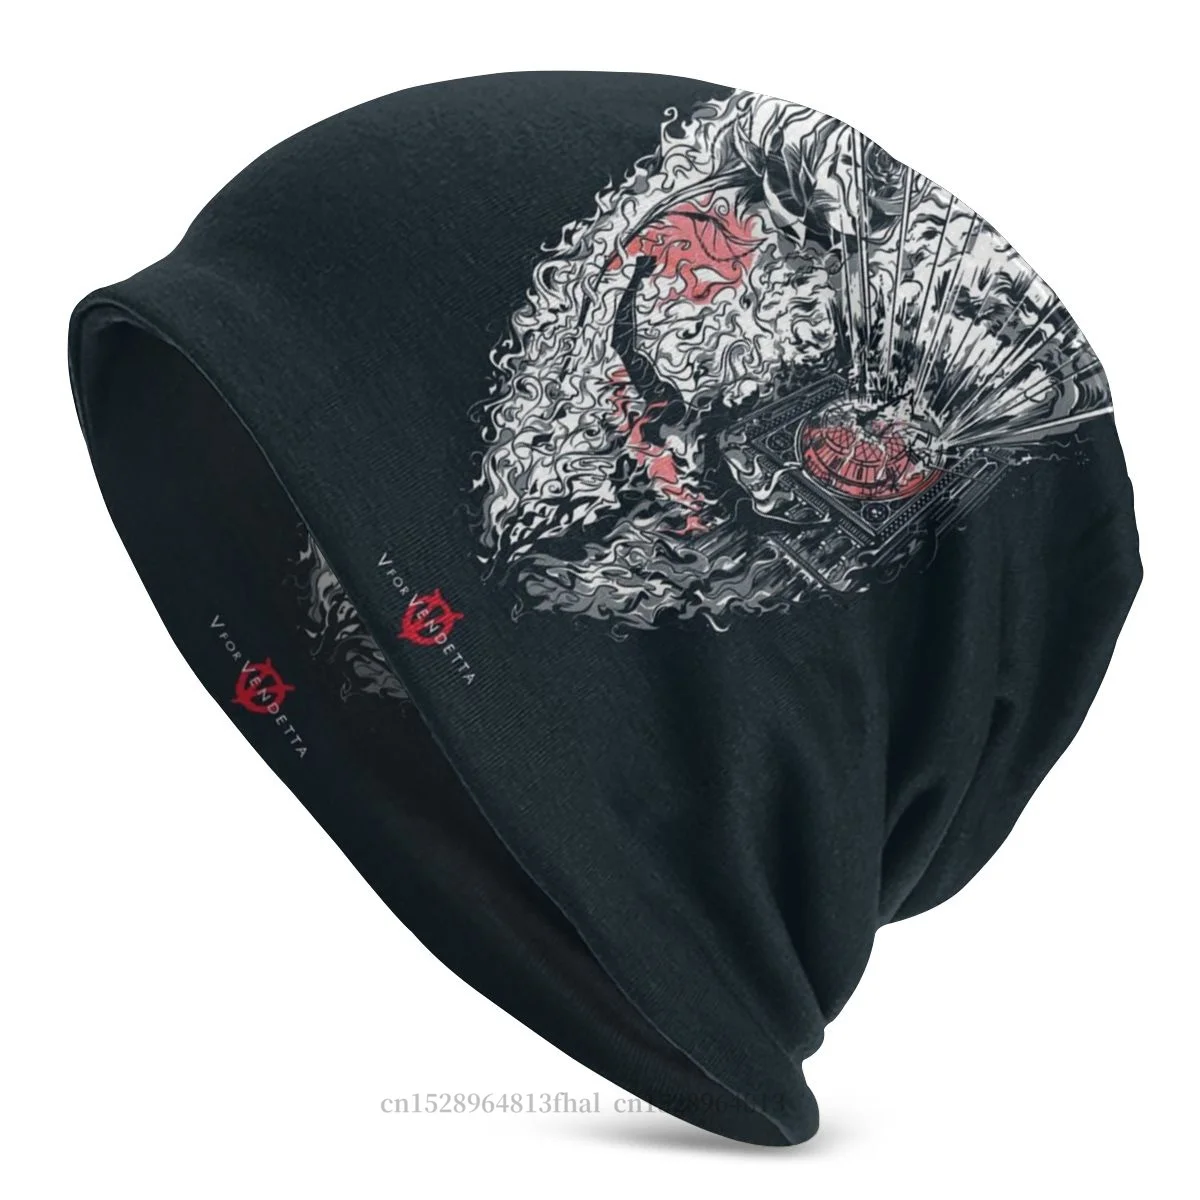 

V for Vendetta Ivy Hammond Science Fiction Movie Skullies Beanies Caps Art Knitting Hat Winter Warm Bonnet Hats for Men Women